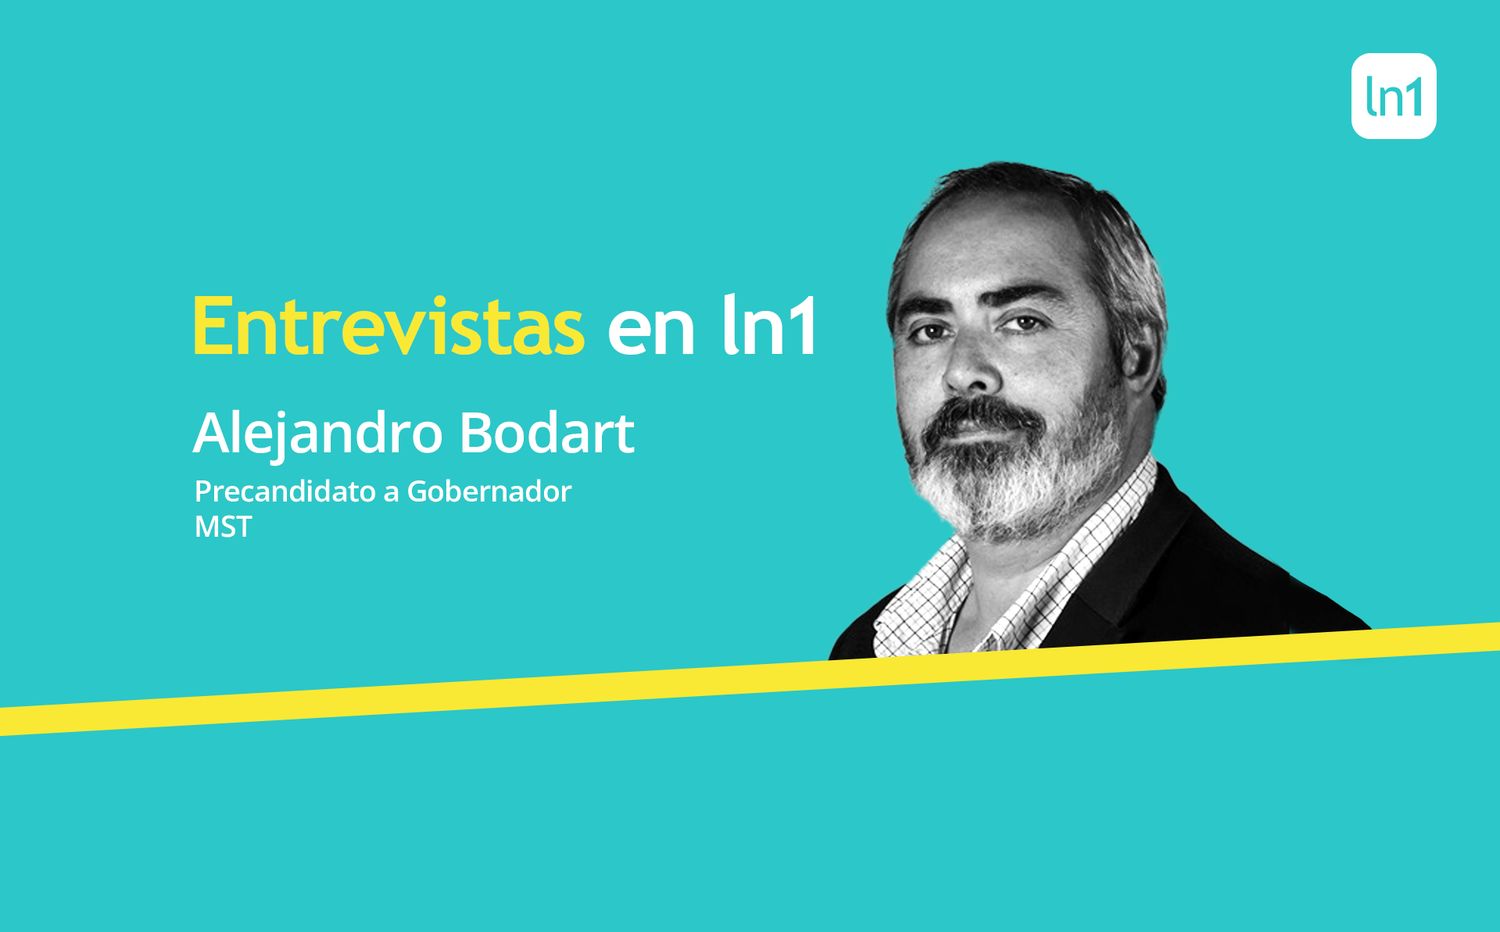 Bodart le tiene fe a la Izquierda: "Ya metimos concejales en bastiones peronistas, ahora queremos gobernar"